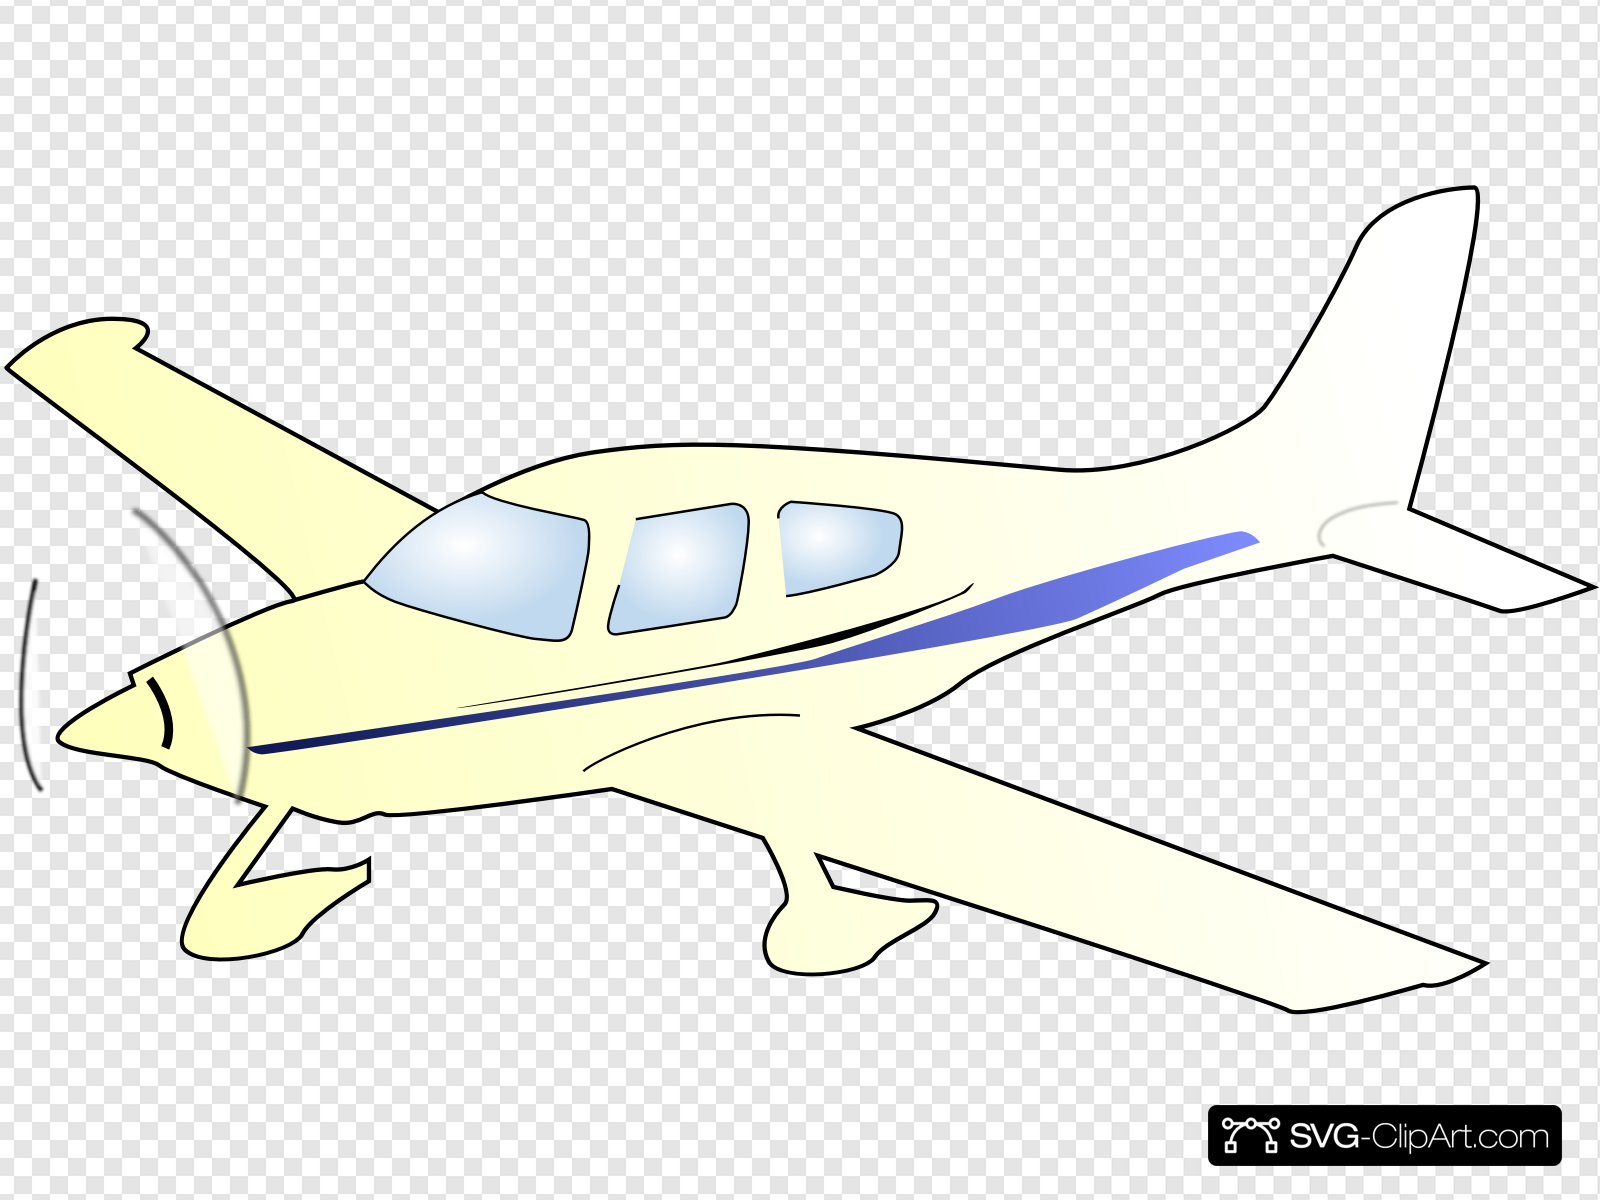 Cessna Plane Clip art, Icon and SVG.